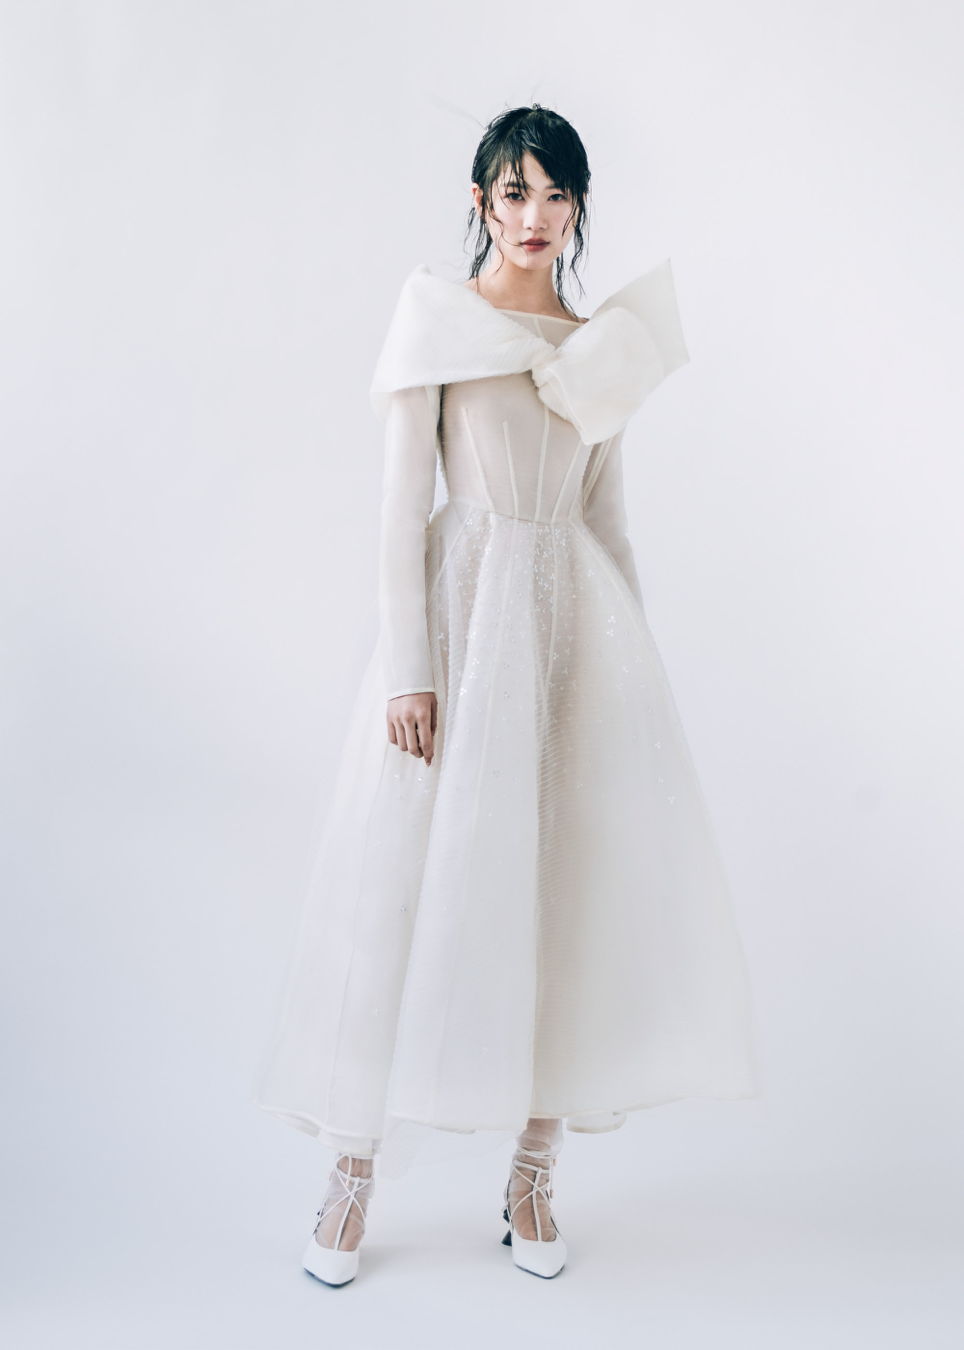 NTK Phương My lần đầu trình diễn ở New York Fashion Week Bridal 2019